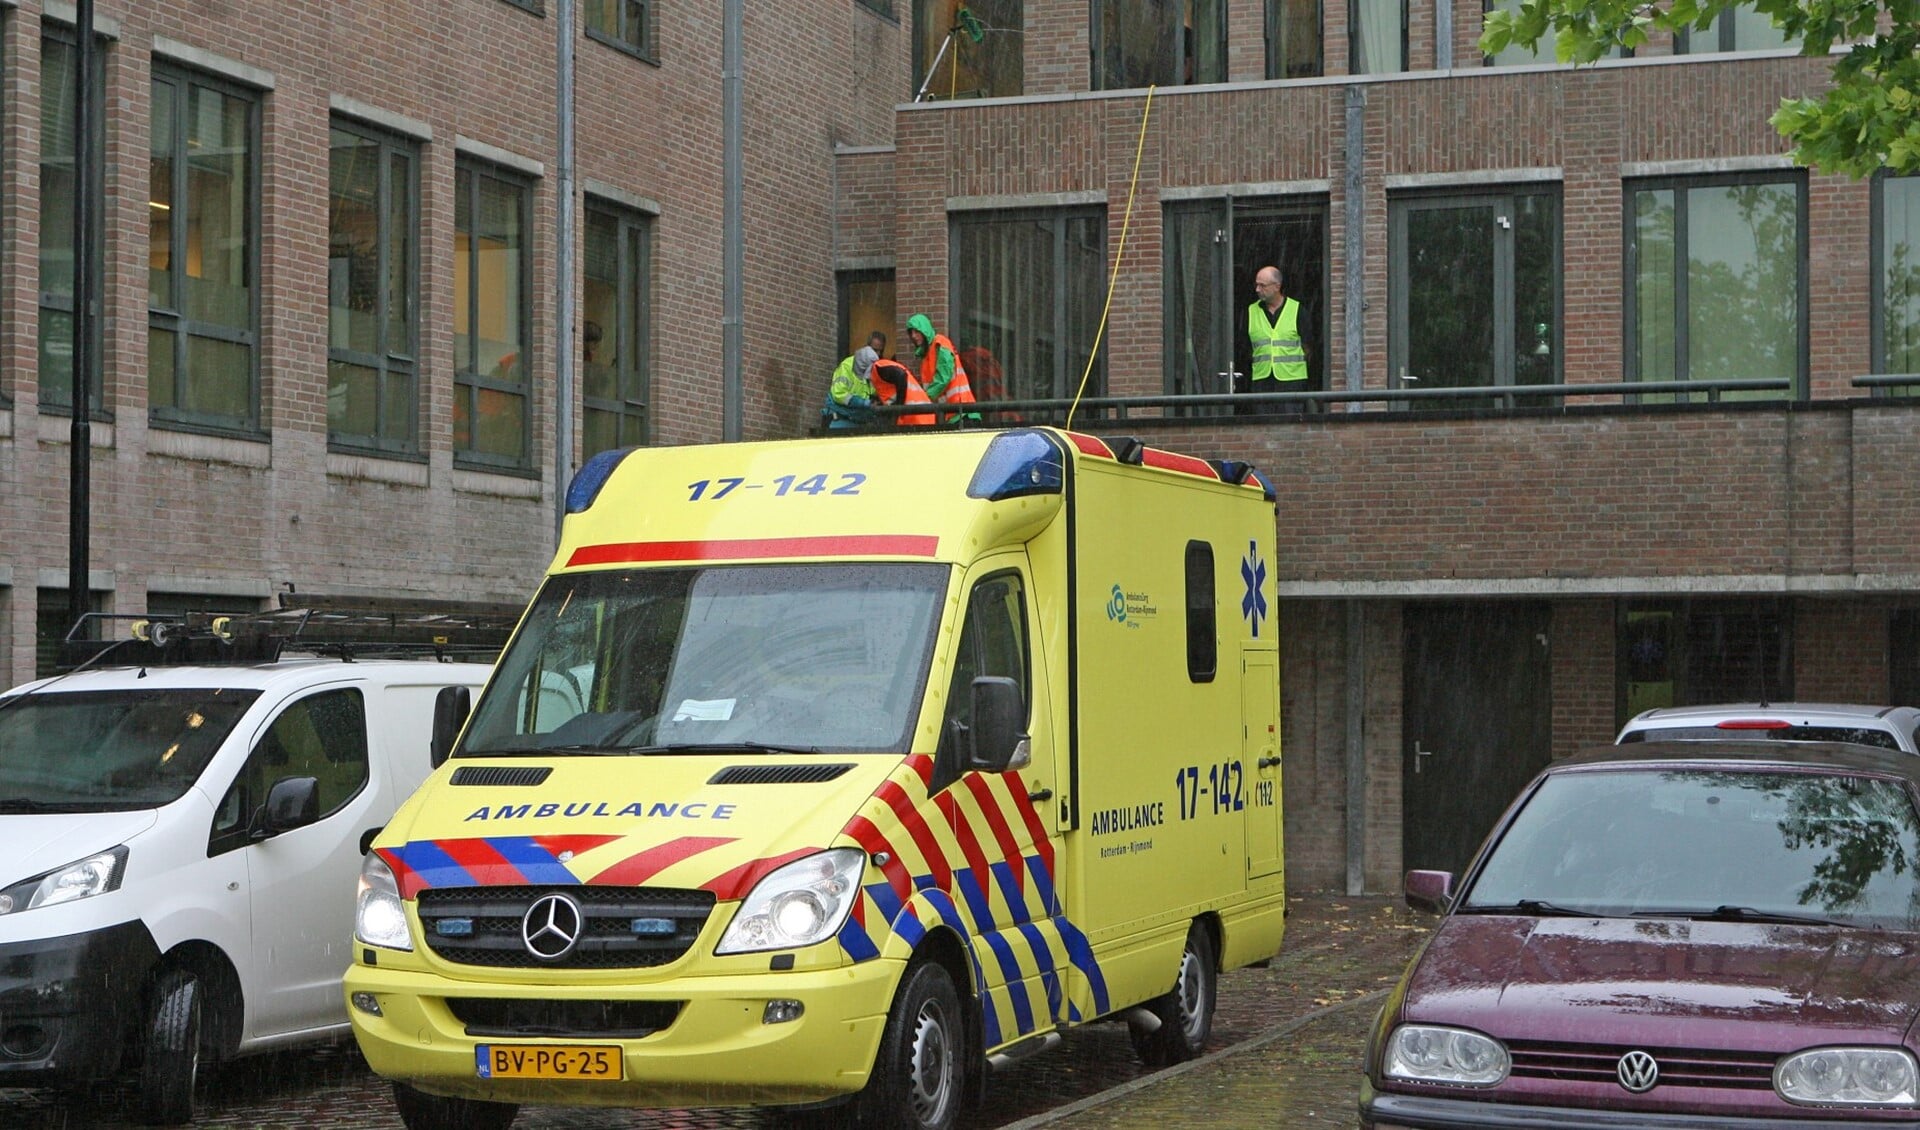 De ambulance staat klaar om glazenwasser naar het ziekenhuis te voeren